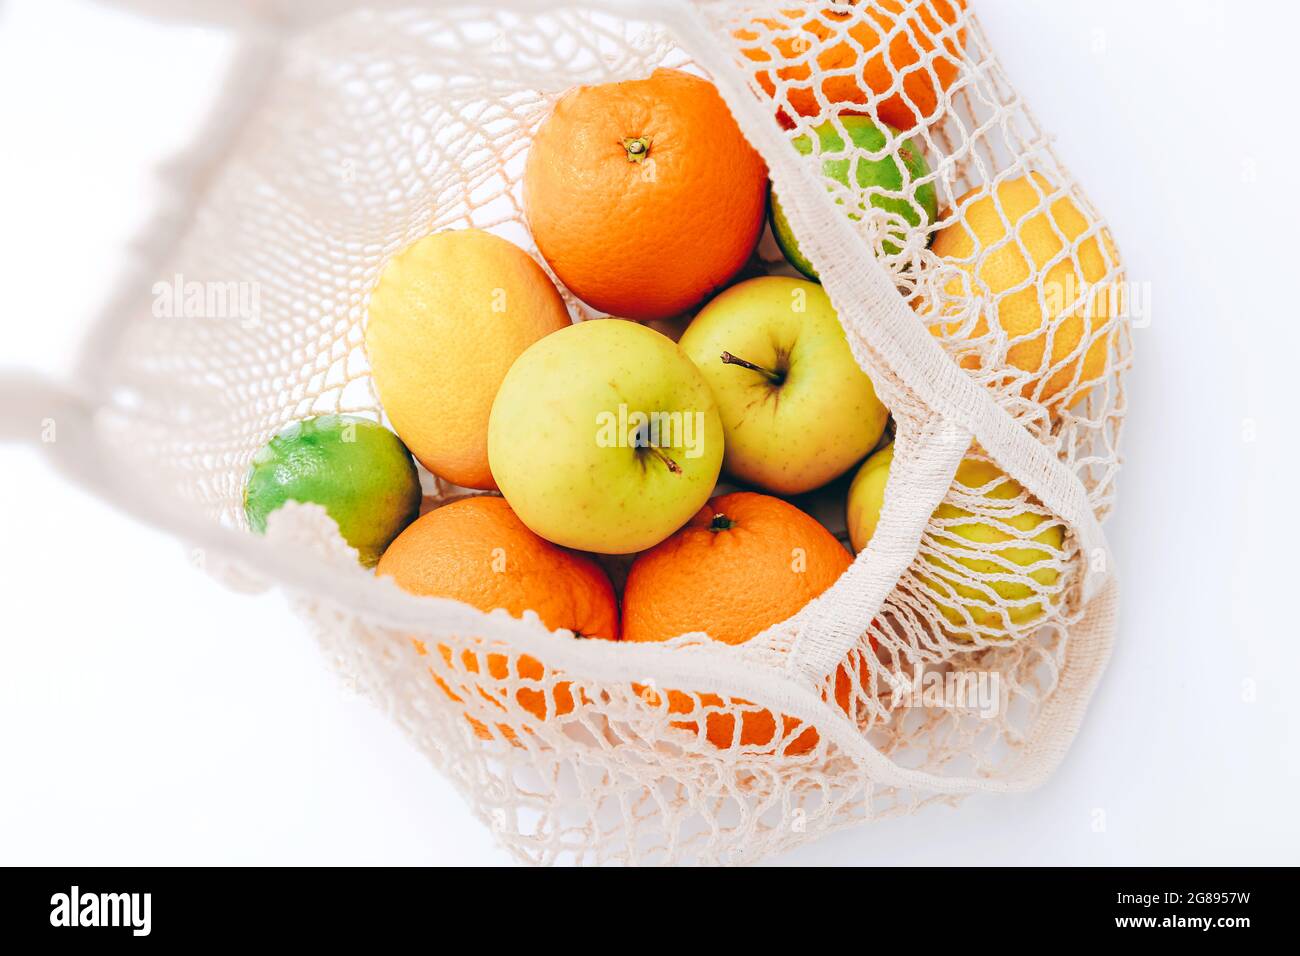 Sac à provisions en maille avec fruits frais sur fond clair. Concept sans déchets, sans plastique. Banque D'Images